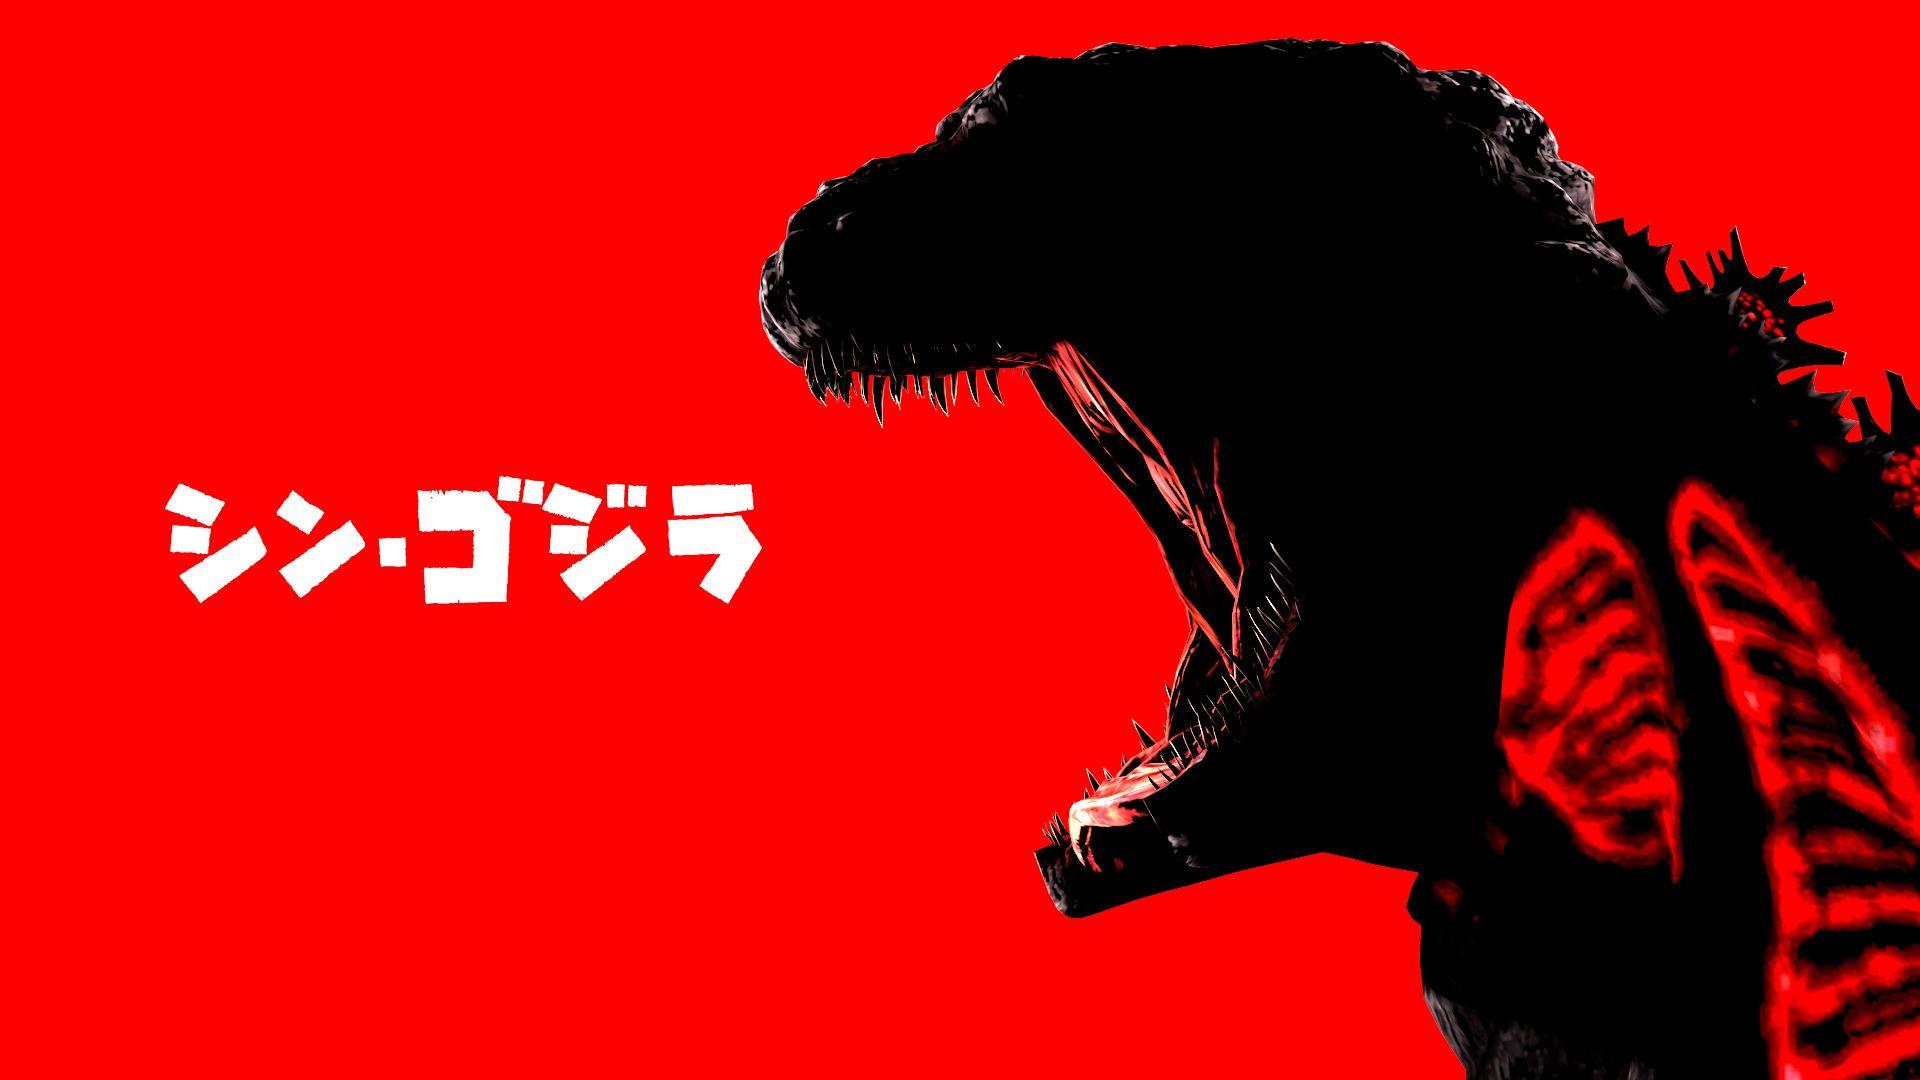 Godzilla Godzilla vs Kong King Kong 4K HD Godzilla vs Kong Wallpapers  HD  Wallpapers  ID 62754